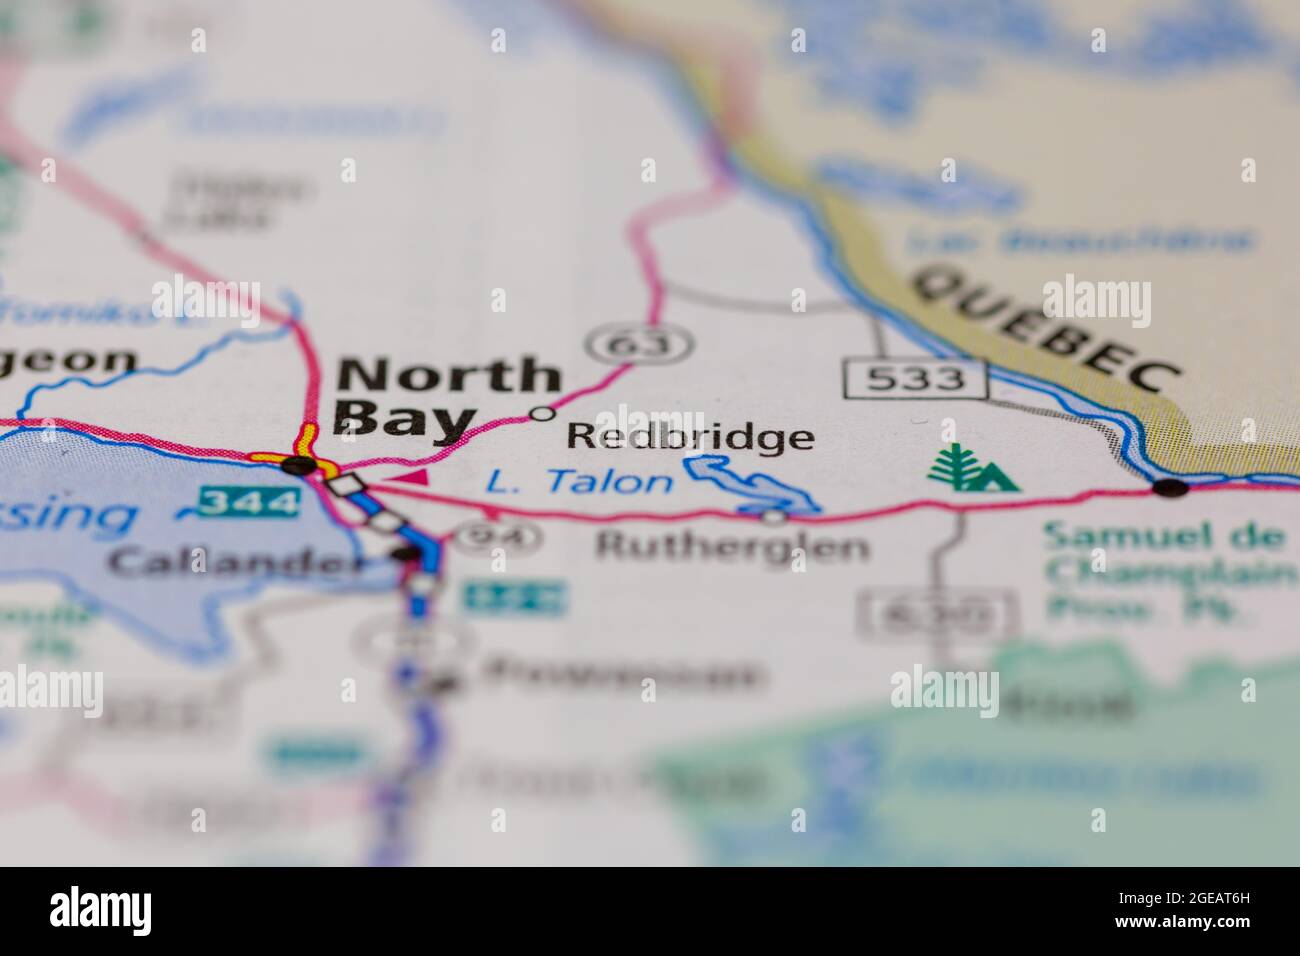 Redbridge Ontario Canada mostrato su una mappa stradale o mappa geografica Foto Stock